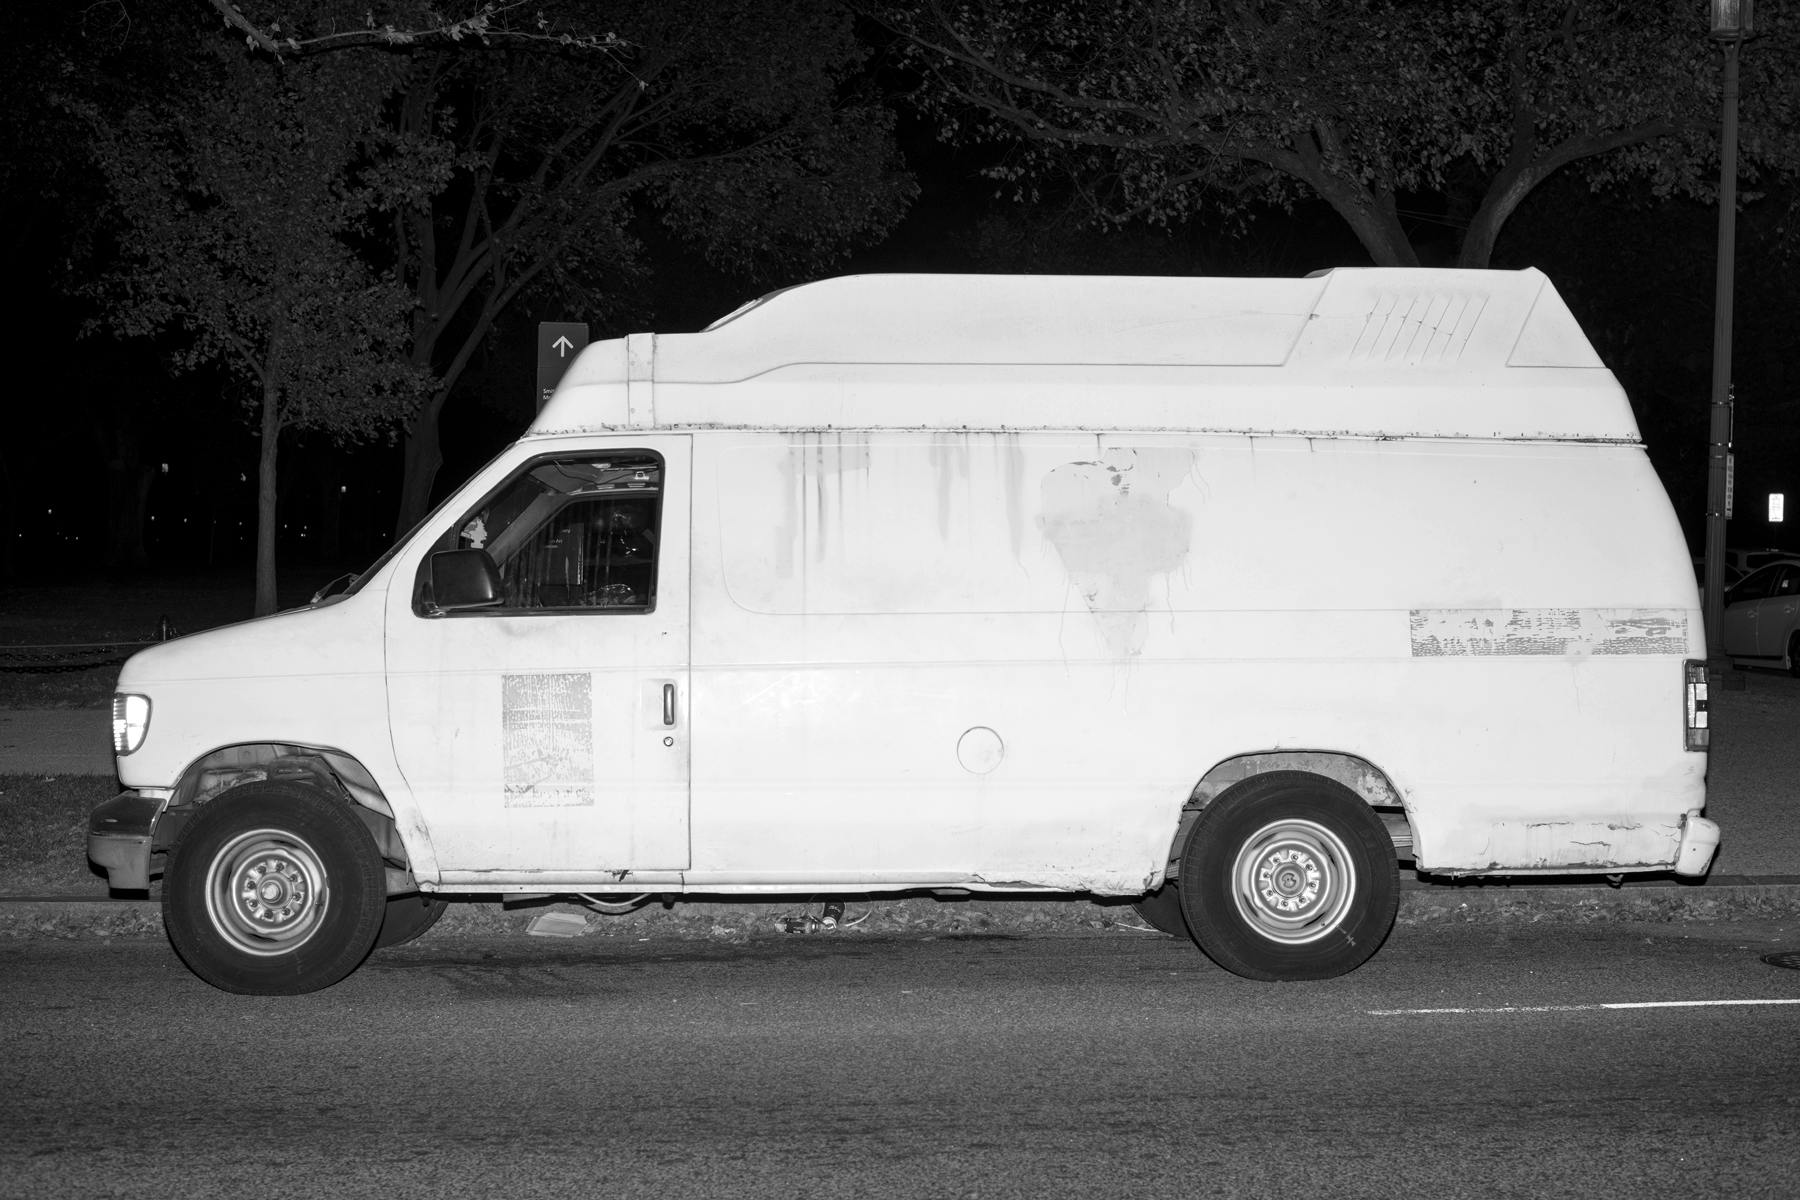 White Vans \u0026 Black Suburbans | The New 